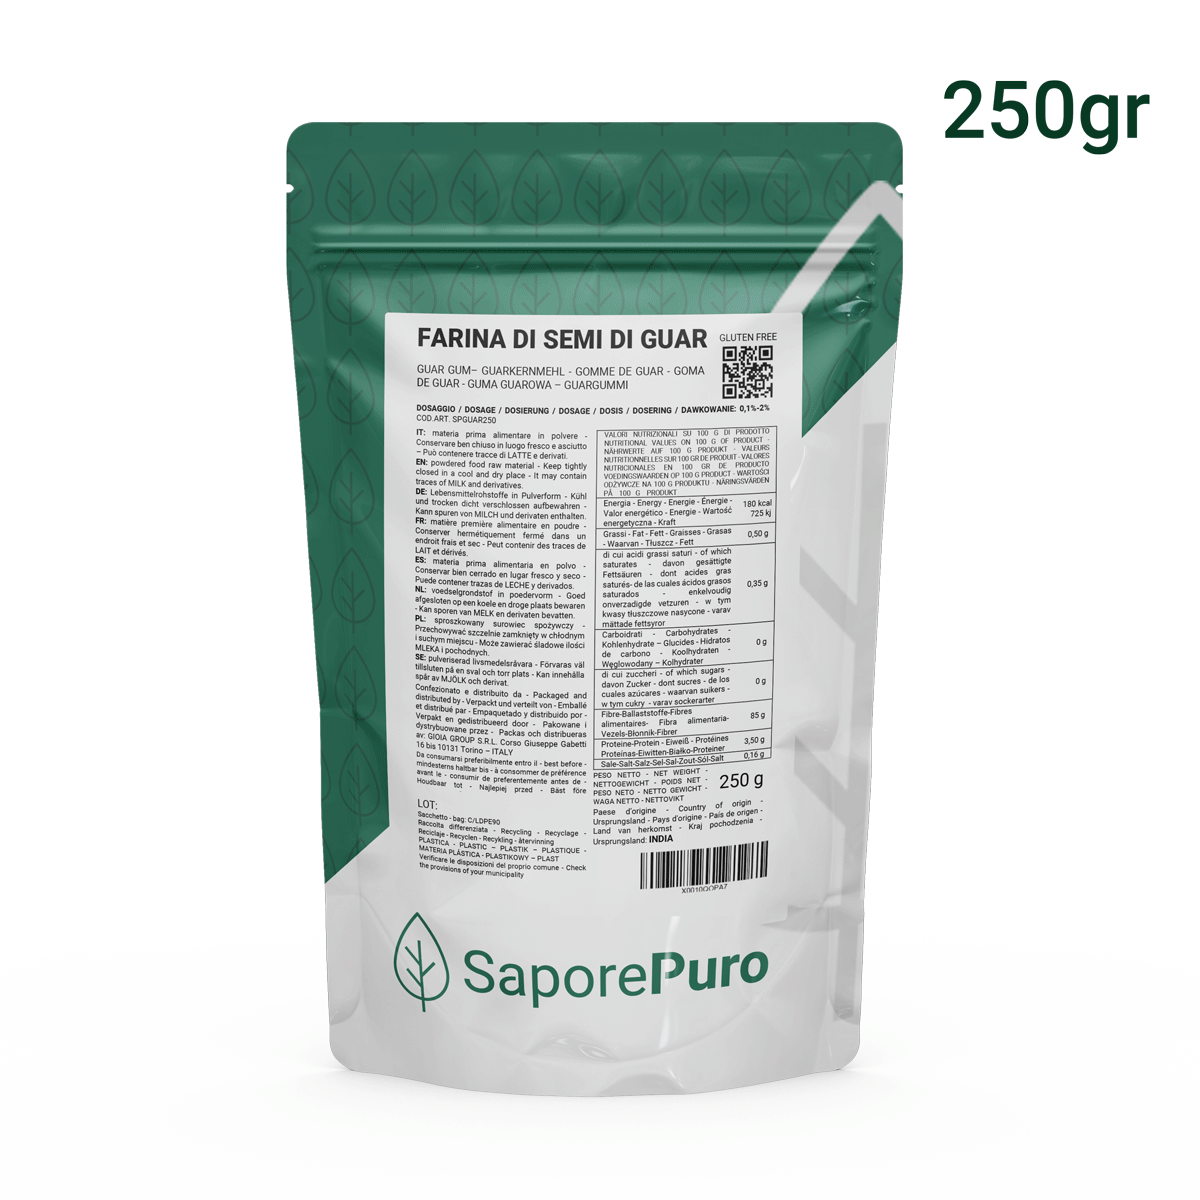 Farina di Semi di Guar - (E412) - 250gr - Origine India - Confezionato in Italia - SaporePuro